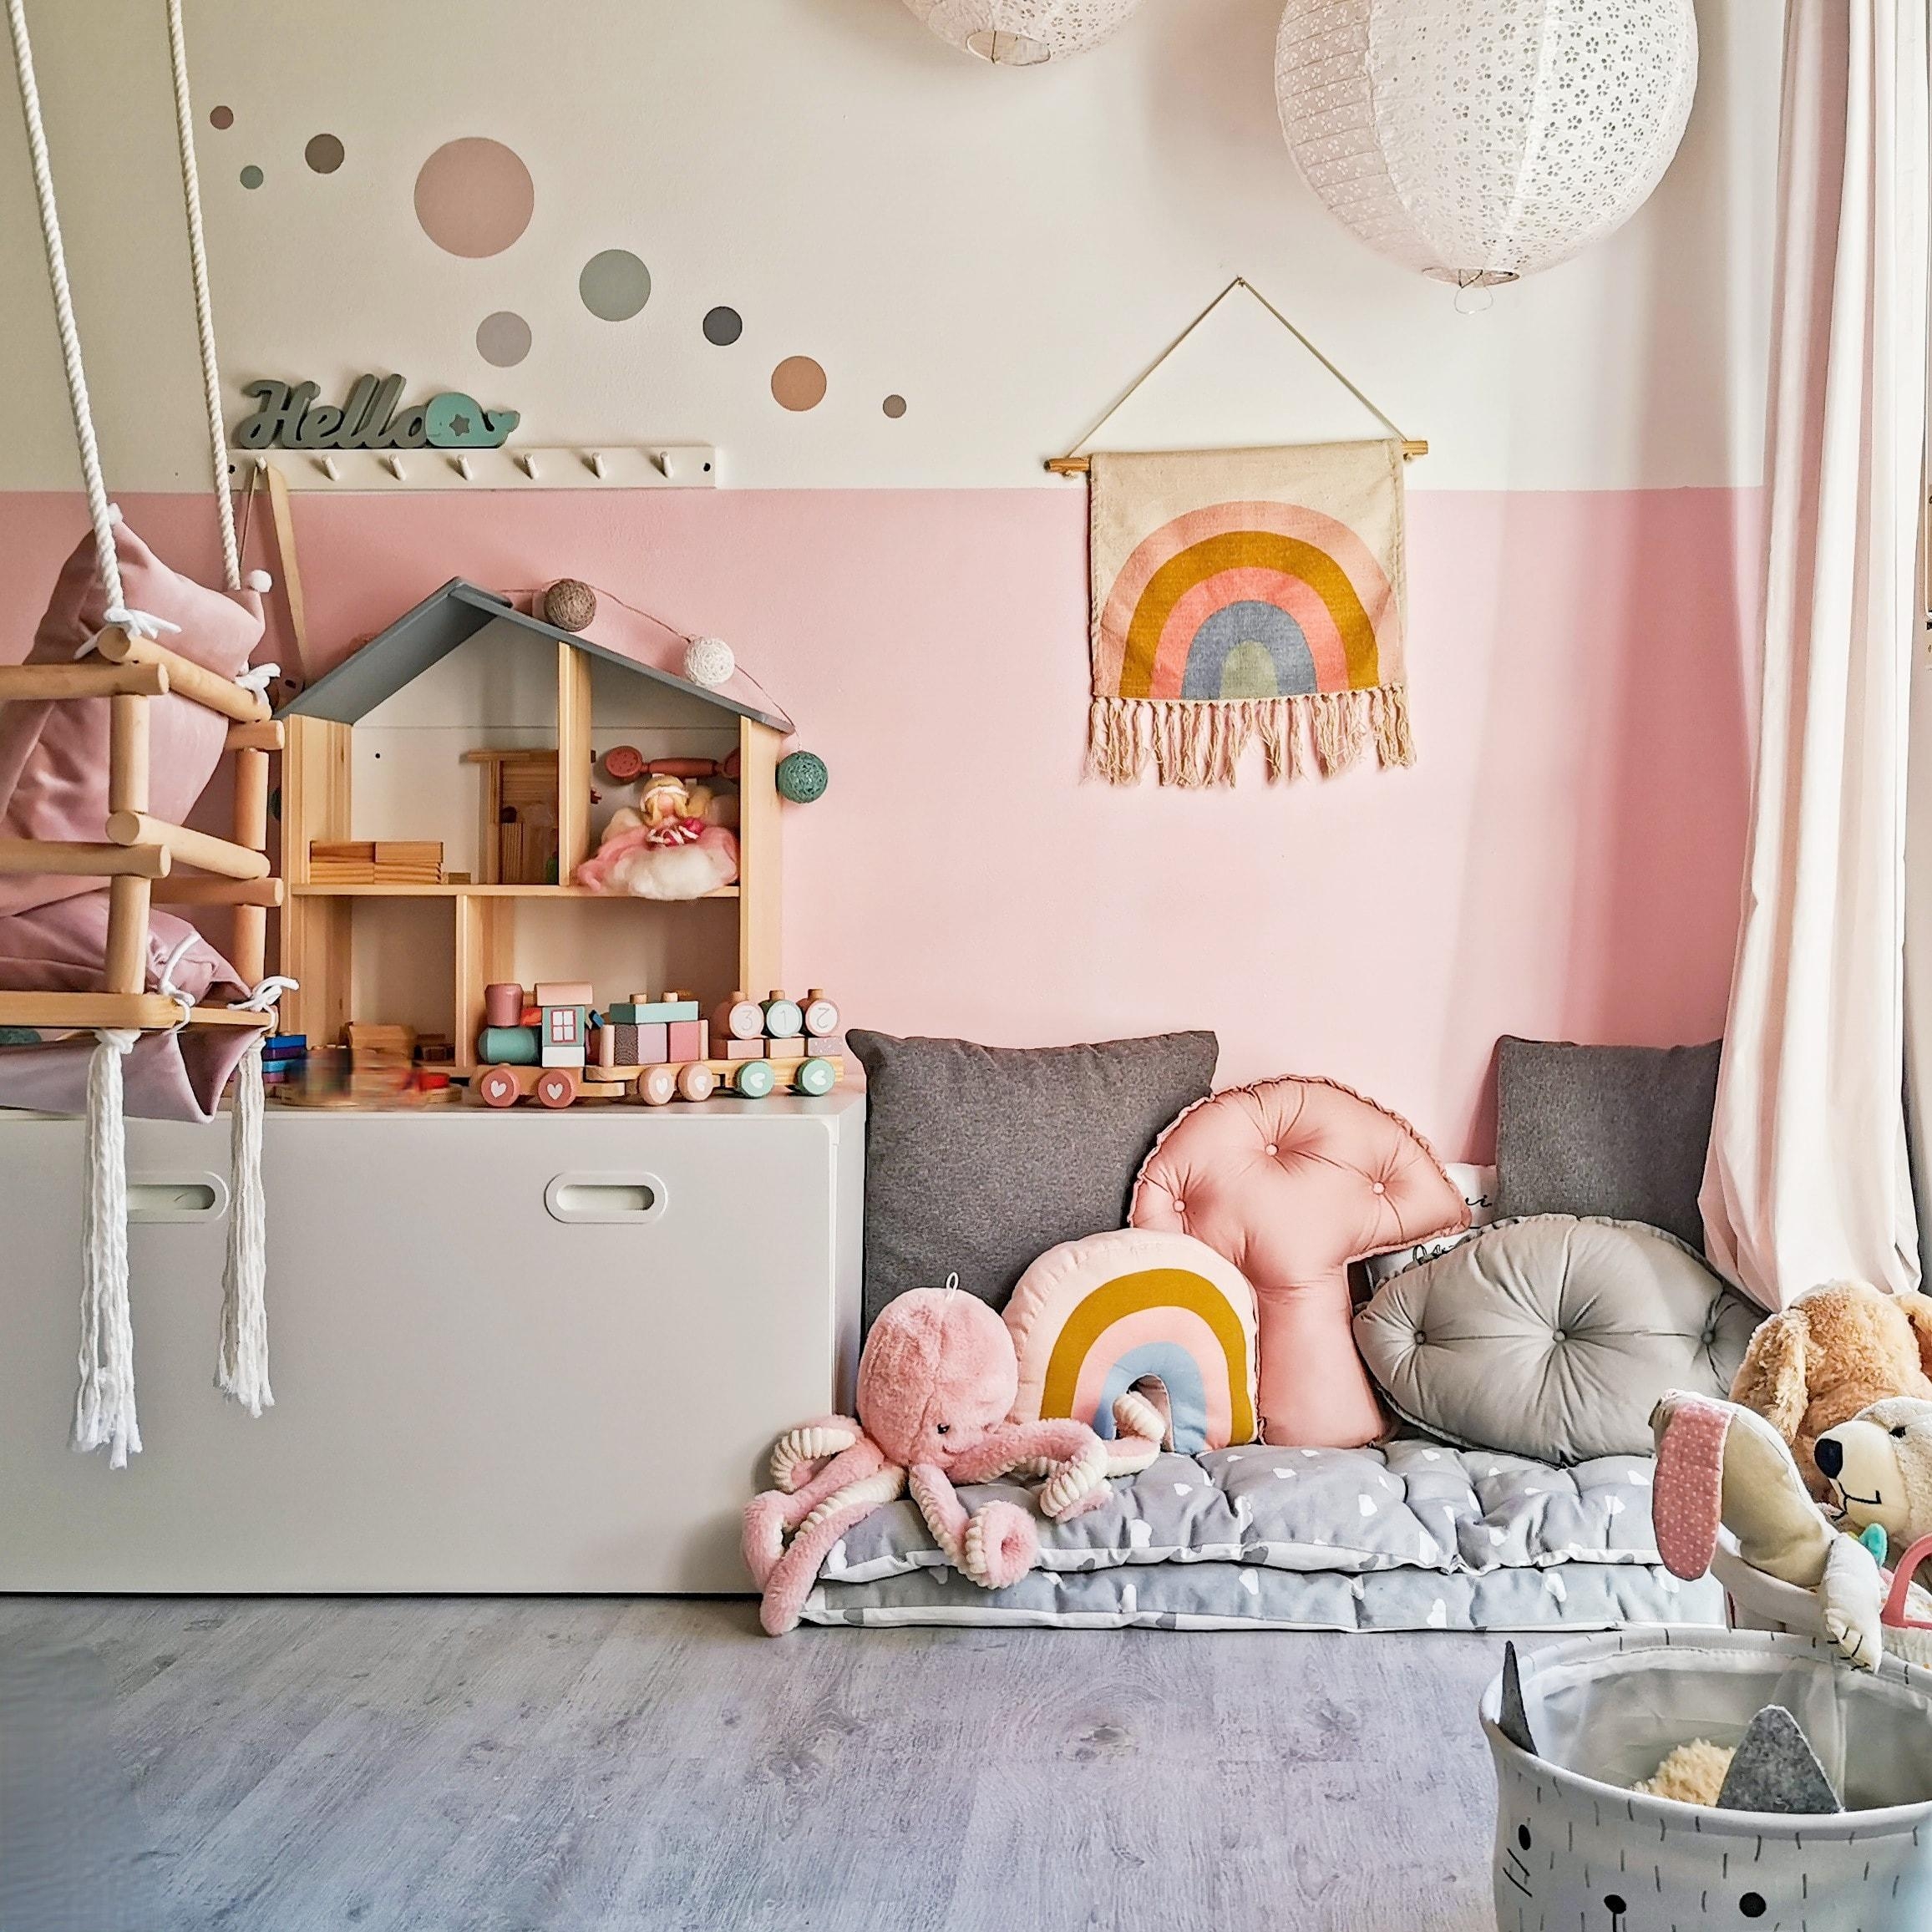 Große #Pastellliebe auch in der #cozycorner im #Kidsroom. #kinderzimmer #cozyhome #pastell #kuschelecke